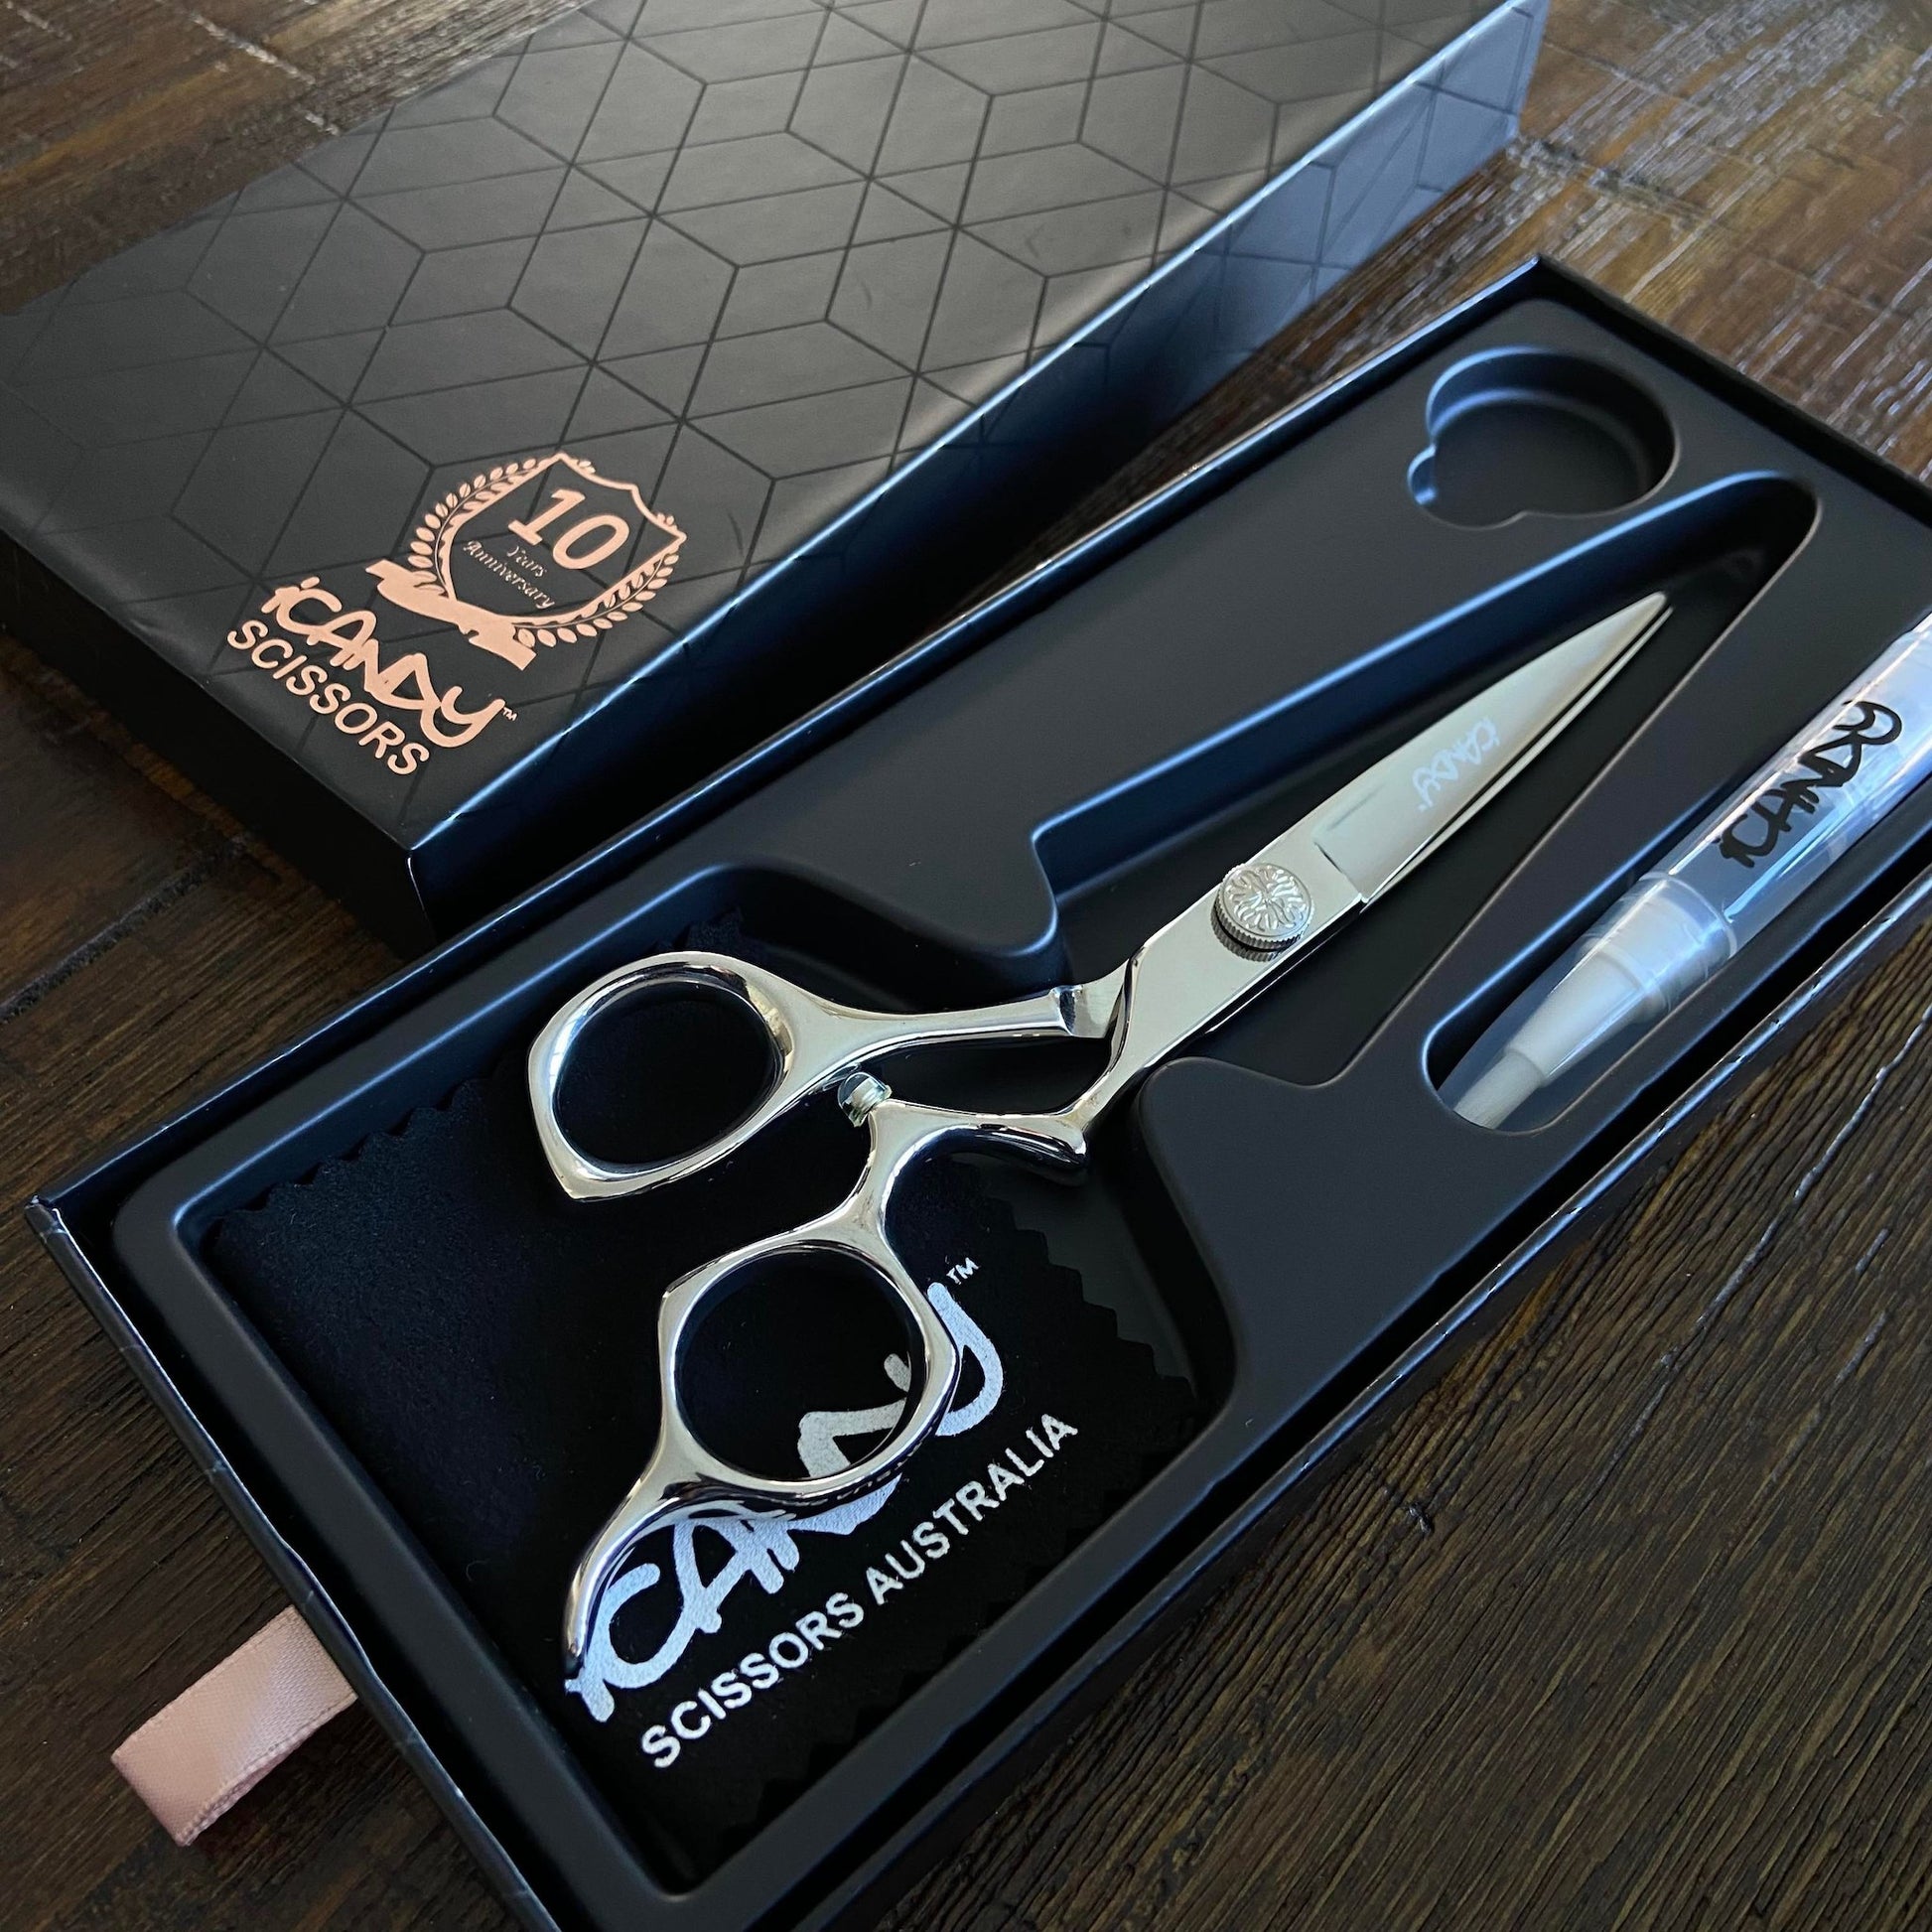 iCandy Athena Scissor 6.0" Open Box